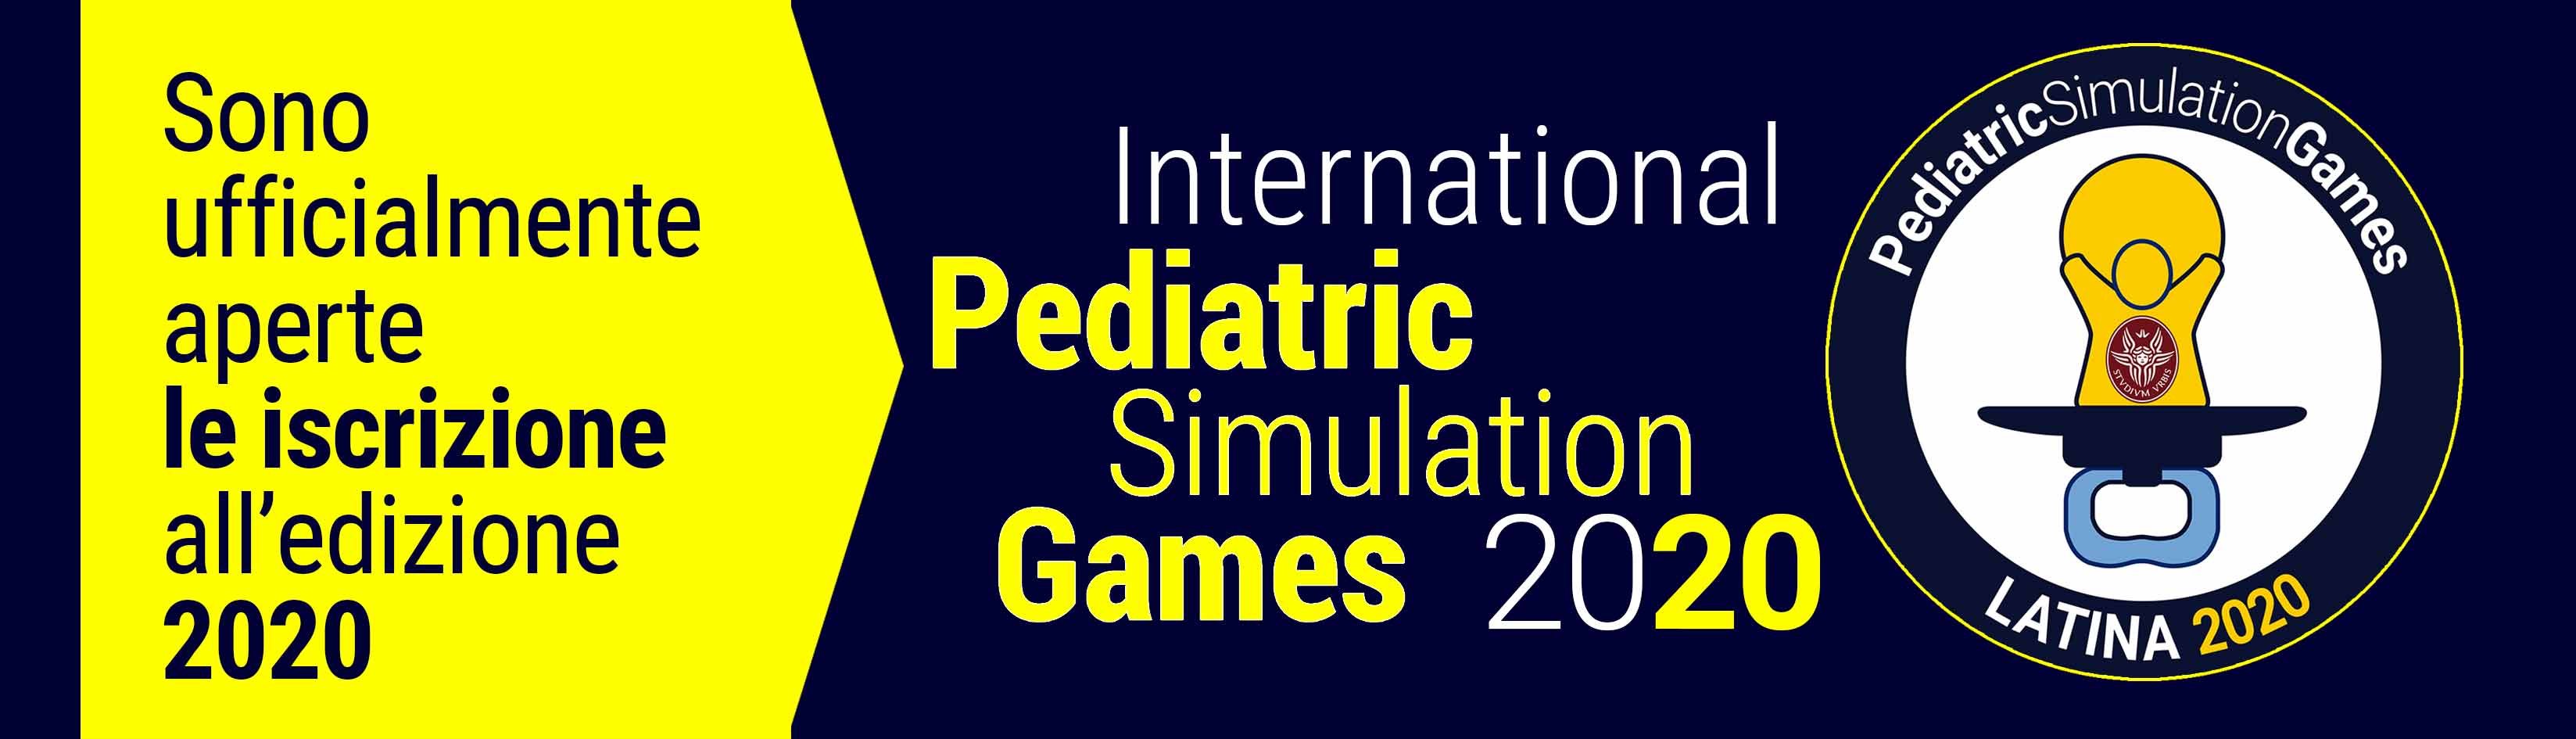 Iscrizione Pediatric Simulation Games 2020